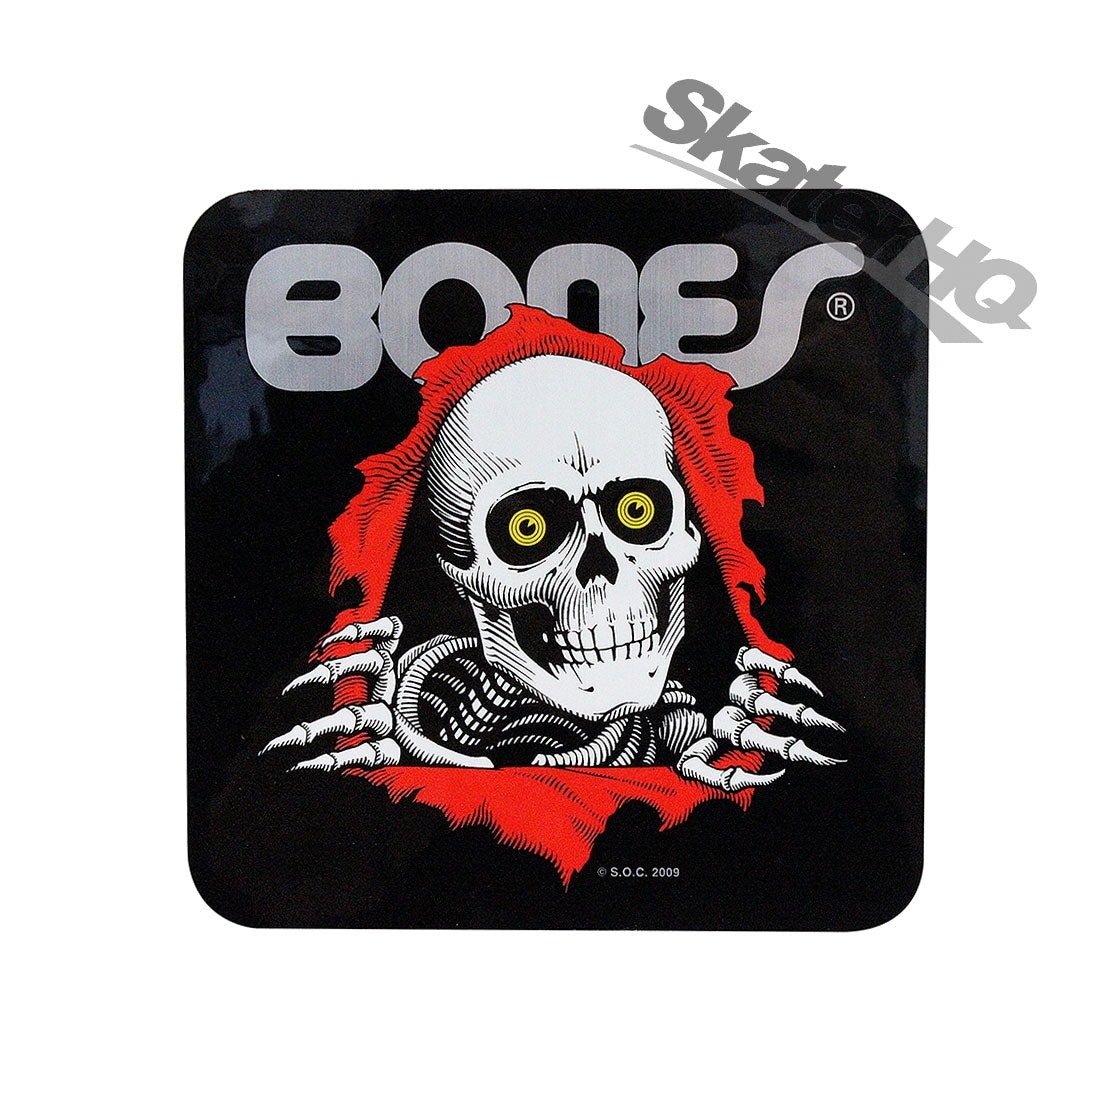 Bones PP Ripper Bumper Sticker - Black Stickers